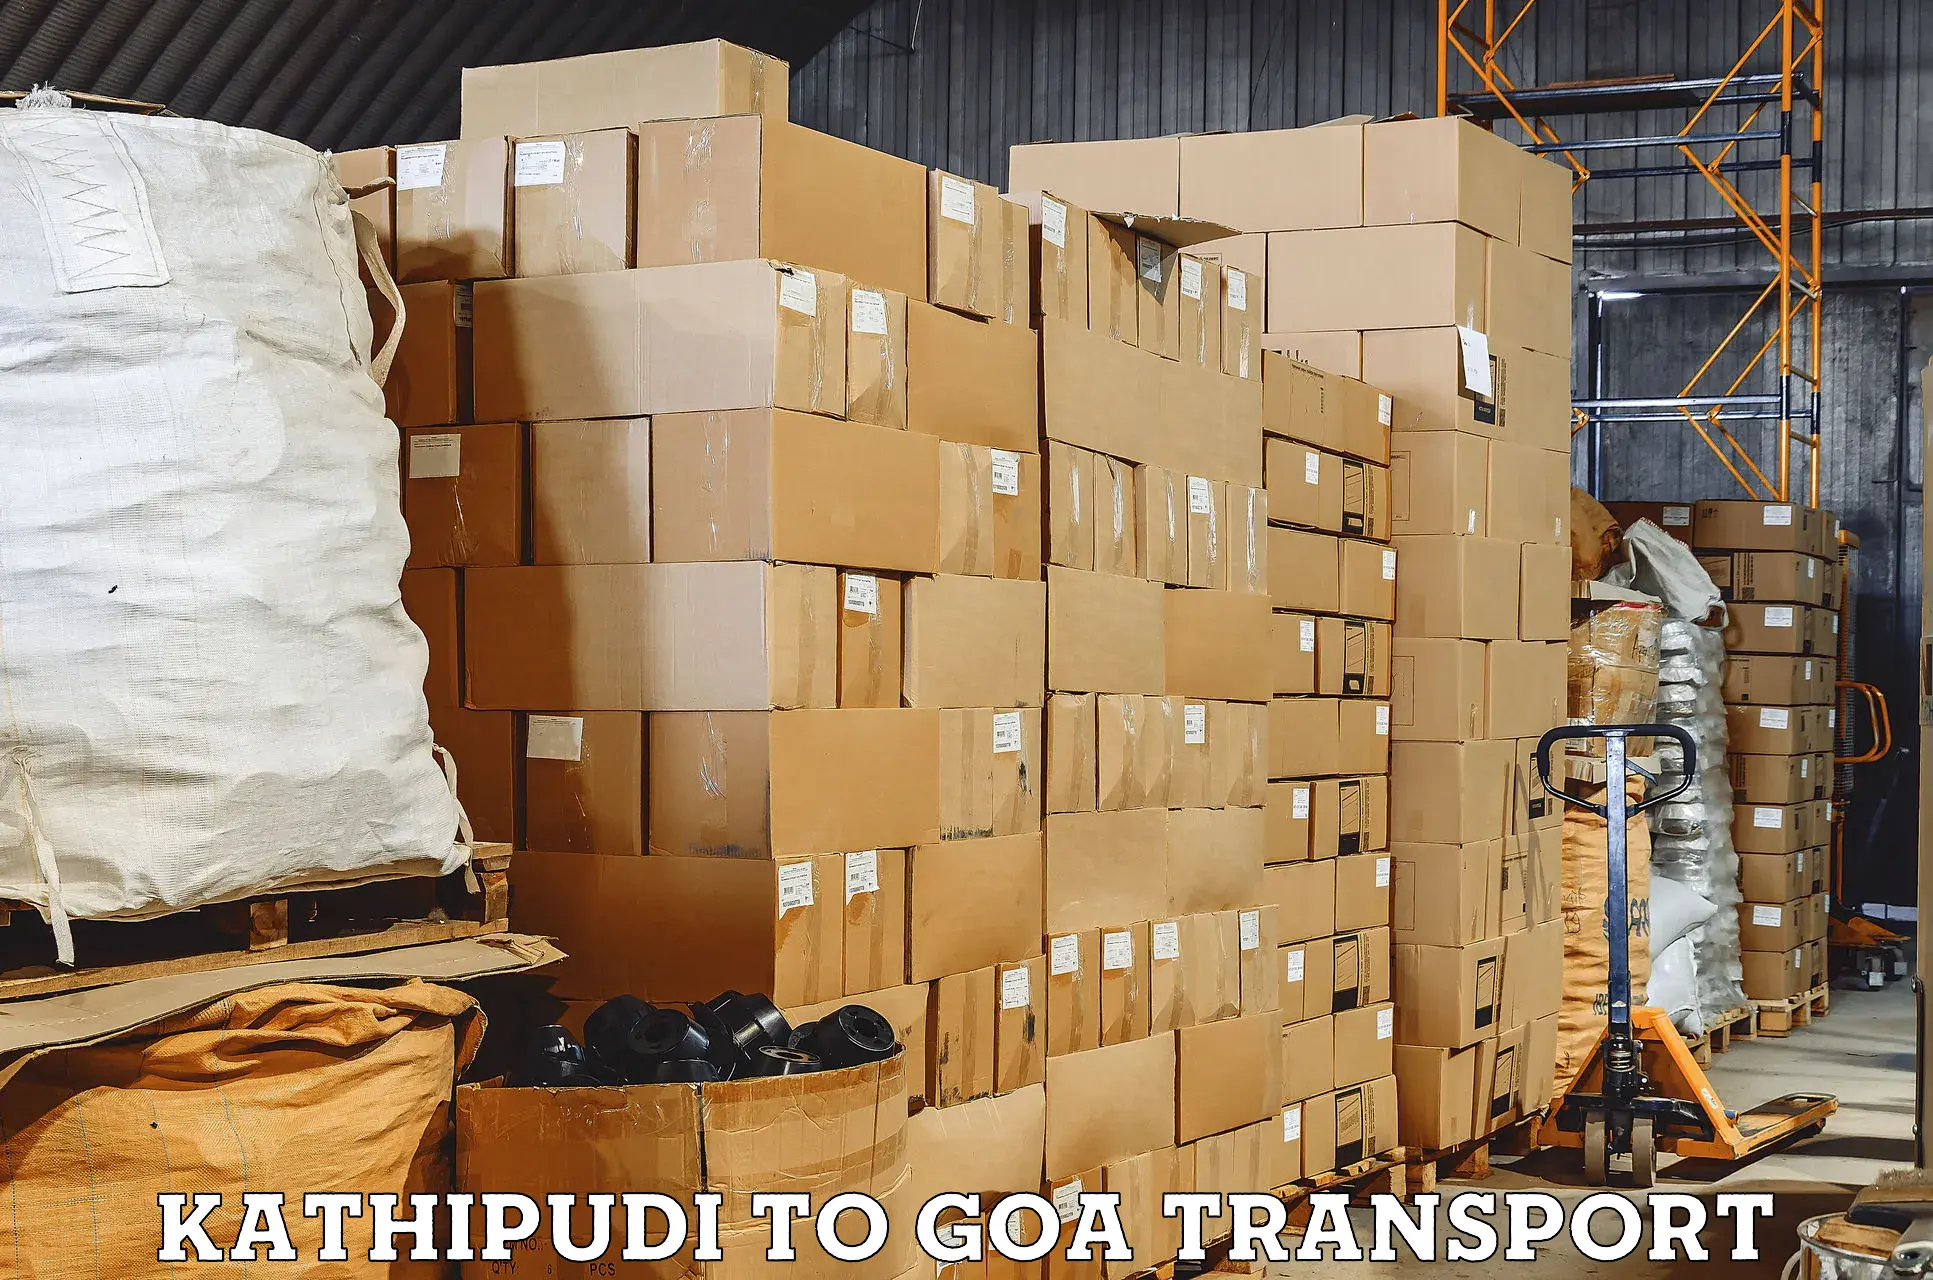 Cycle transportation service Kathipudi to Goa University